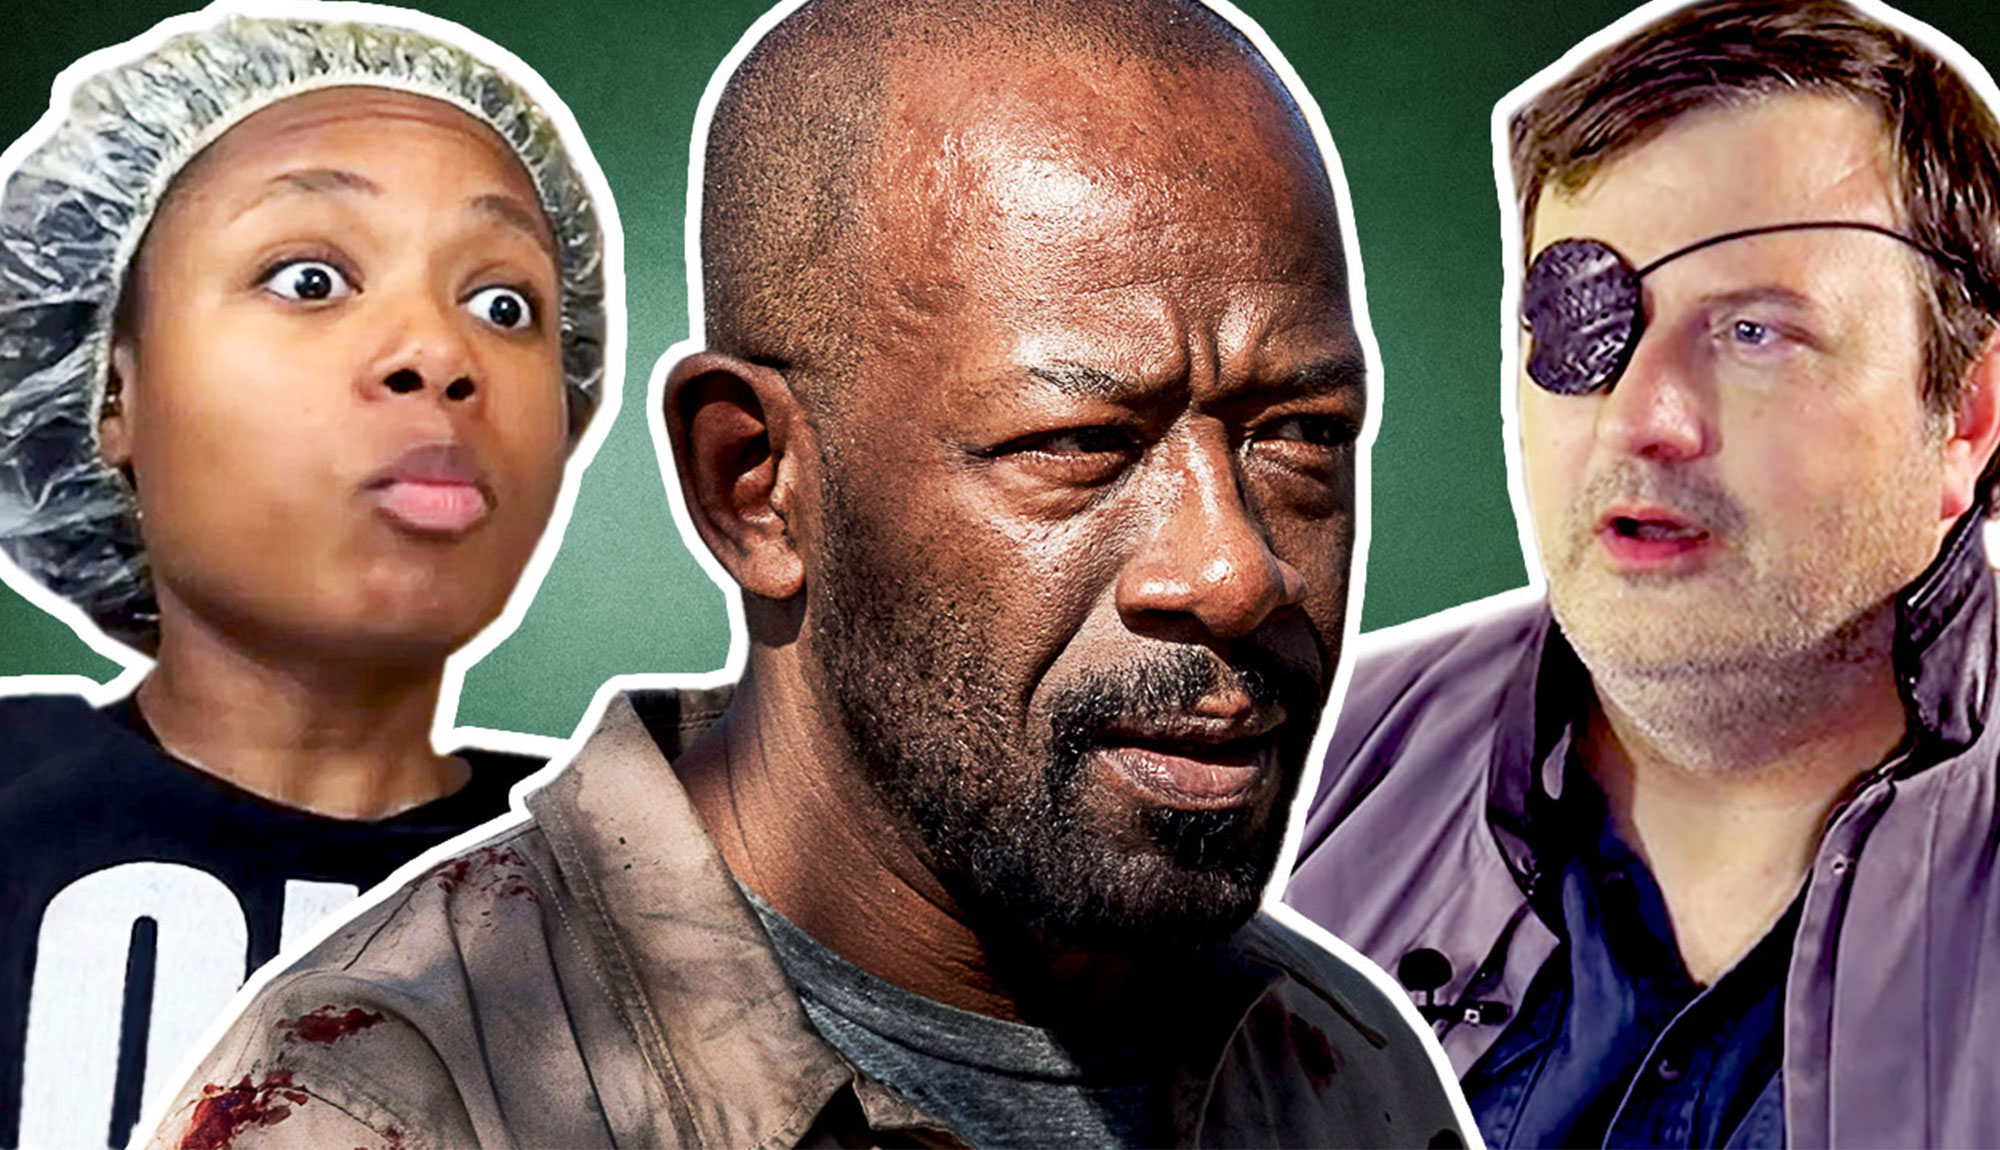 Fans React to Fear the Walking Dead Season 5 Episode 9 “Channel 4”